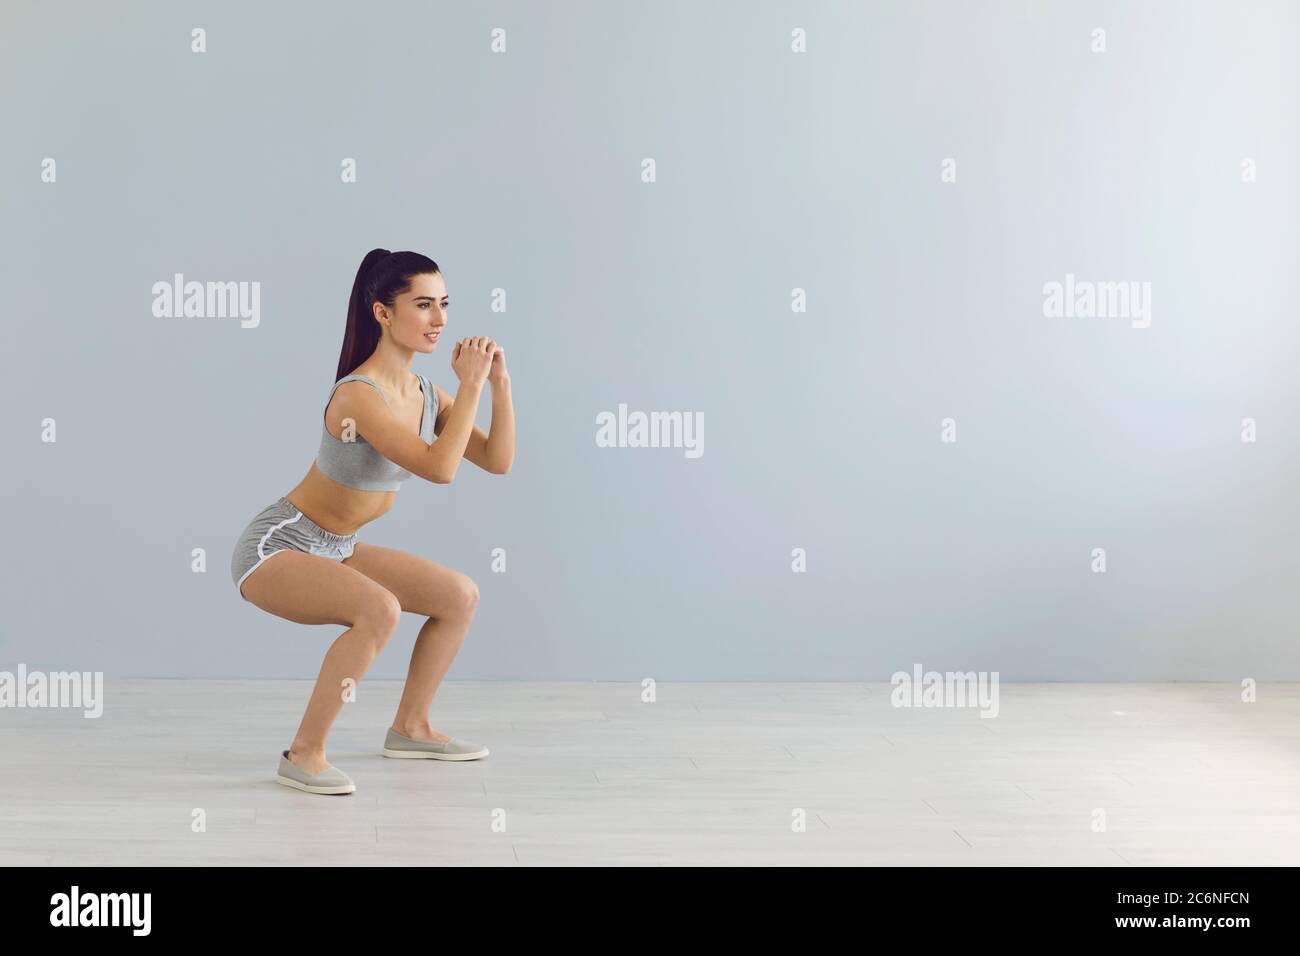 Ajuster la sportswoman faisant des squats pendant l'entraînement près du mur Banque D'Images